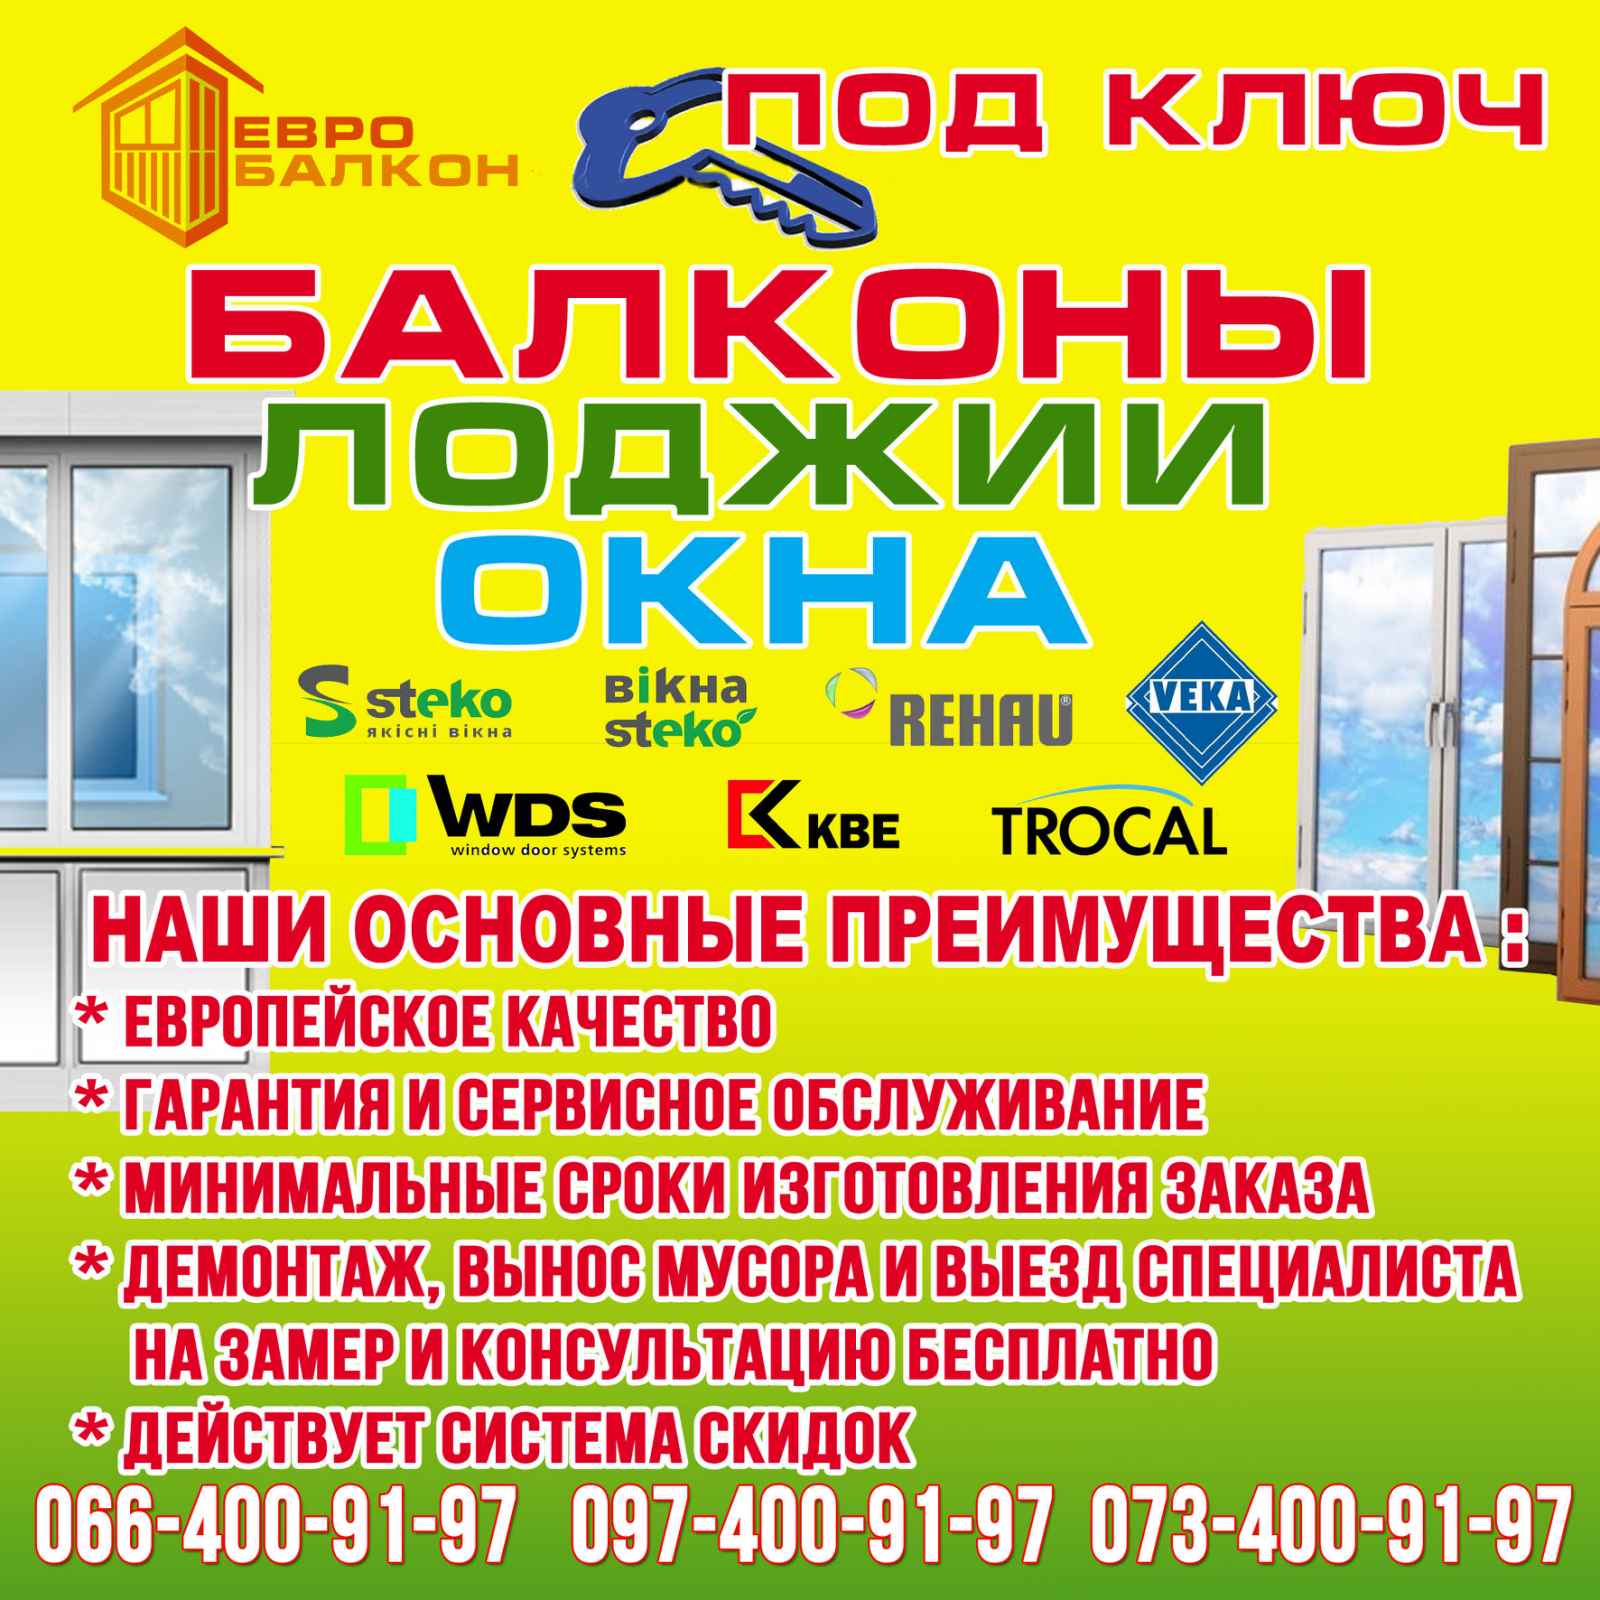 Балкон Лоджия под ключ в Одессе по АКЦИИ -30%.